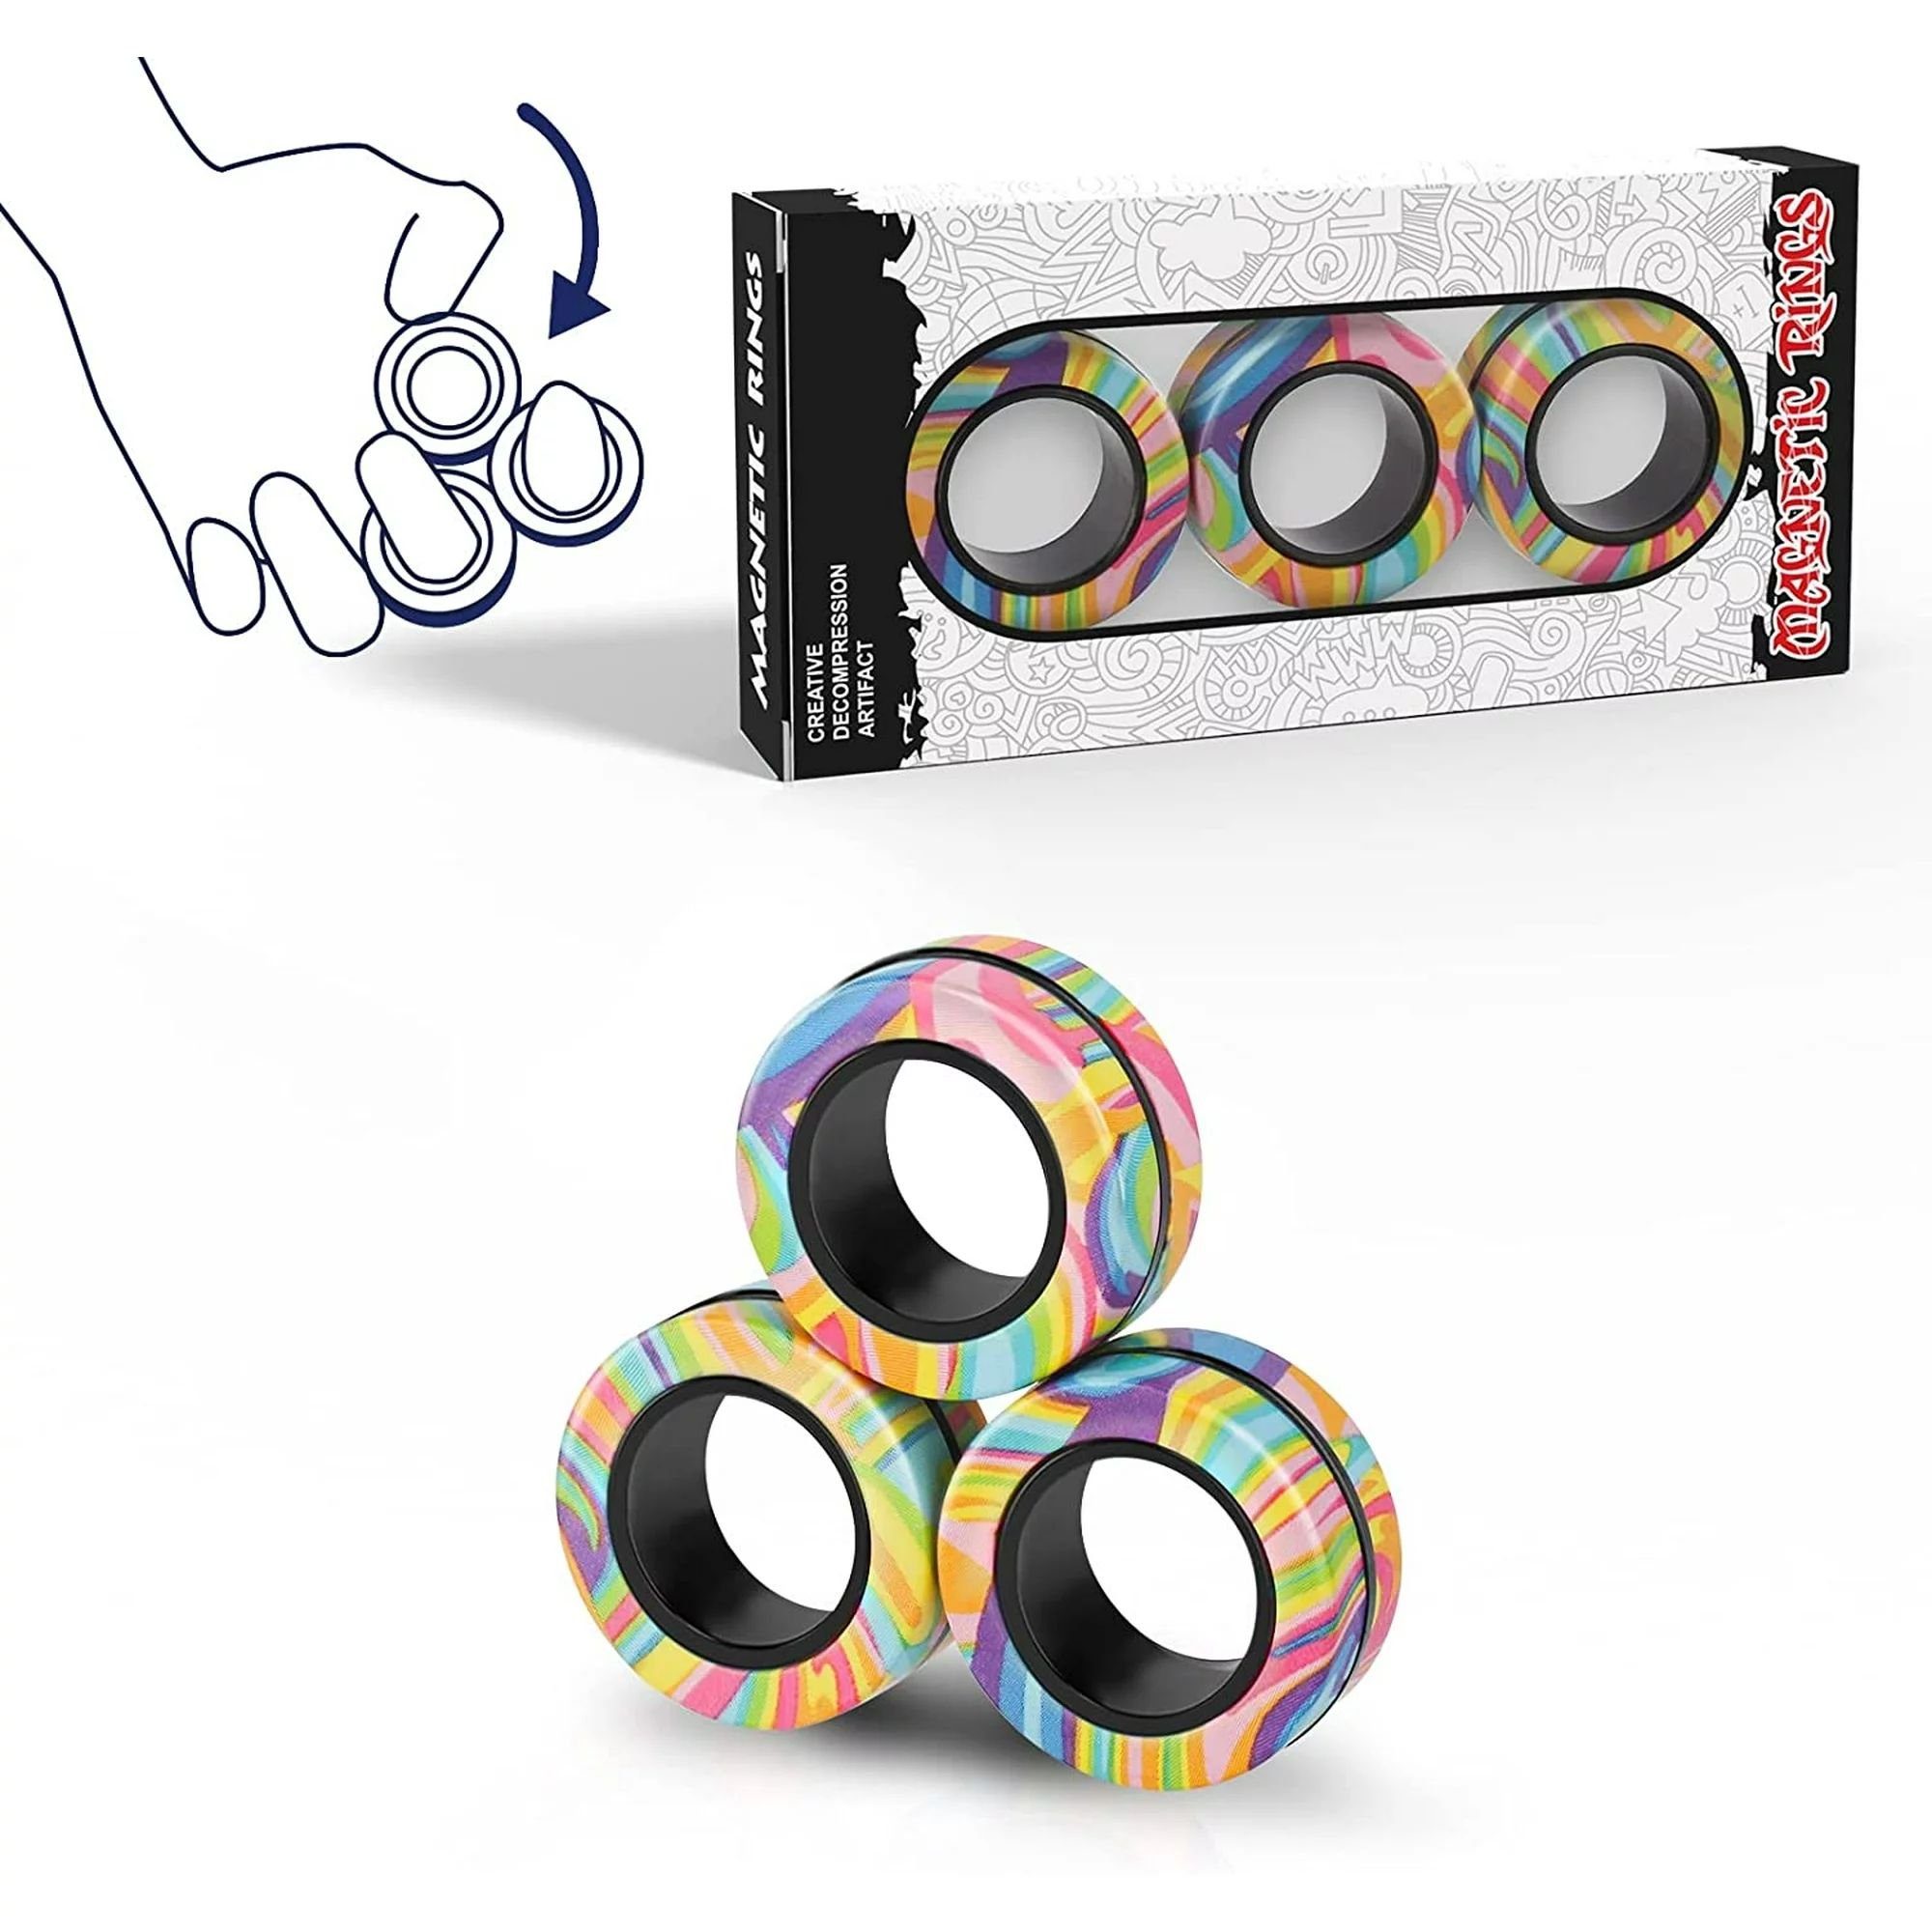 SOTOR Fidget Spinner Magnetische Ringe Fidget Spielzeug Set, Idee ADHD  Fidget Spielzeug, Fidget Magnete Spinner Ringe für Angst Relief Therapie